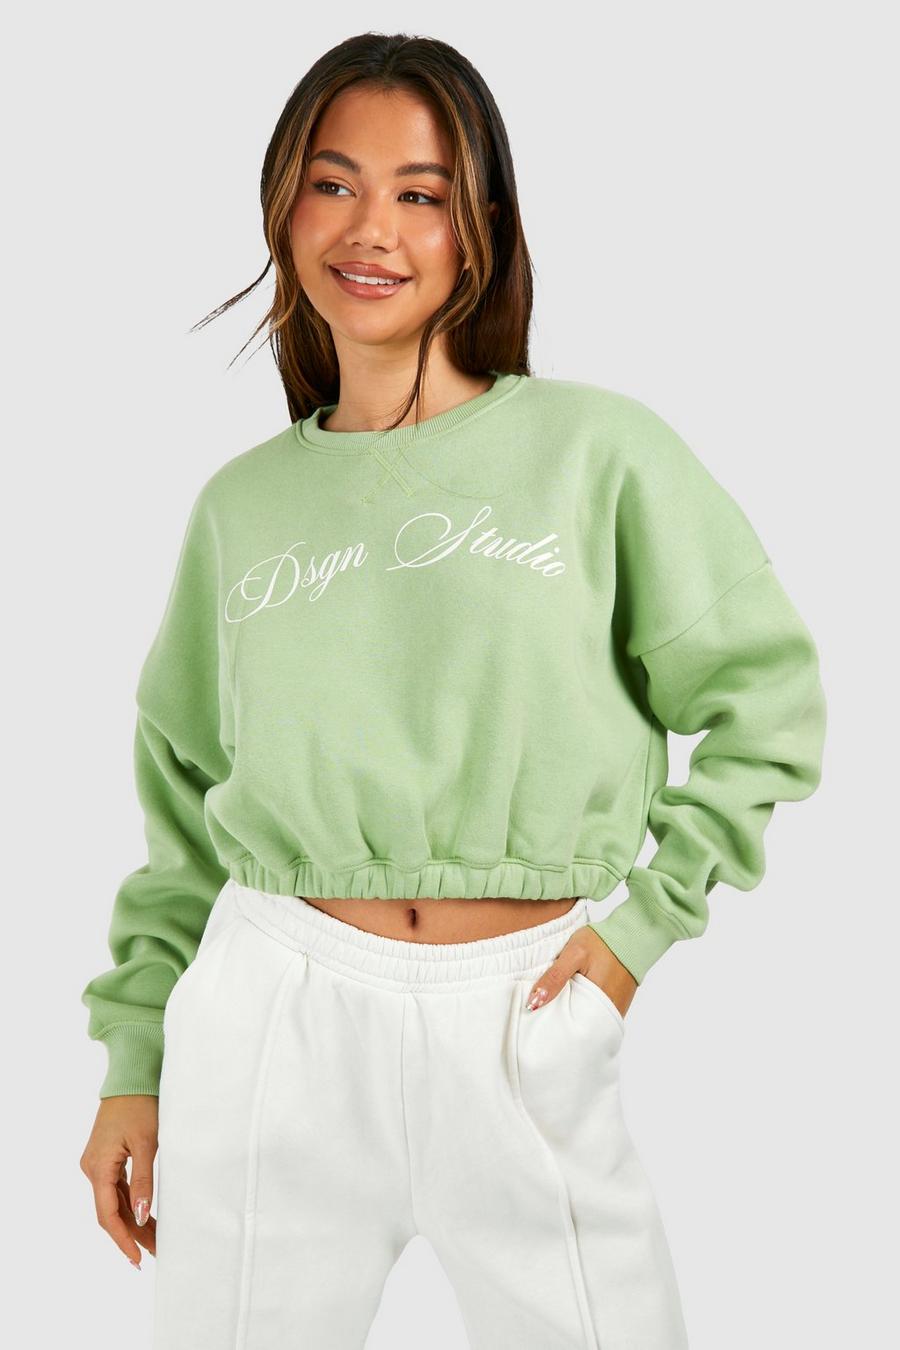 Kurzes kastiges Sweatshirt mit Dsgn Studio Print und elastischem Saum, Green